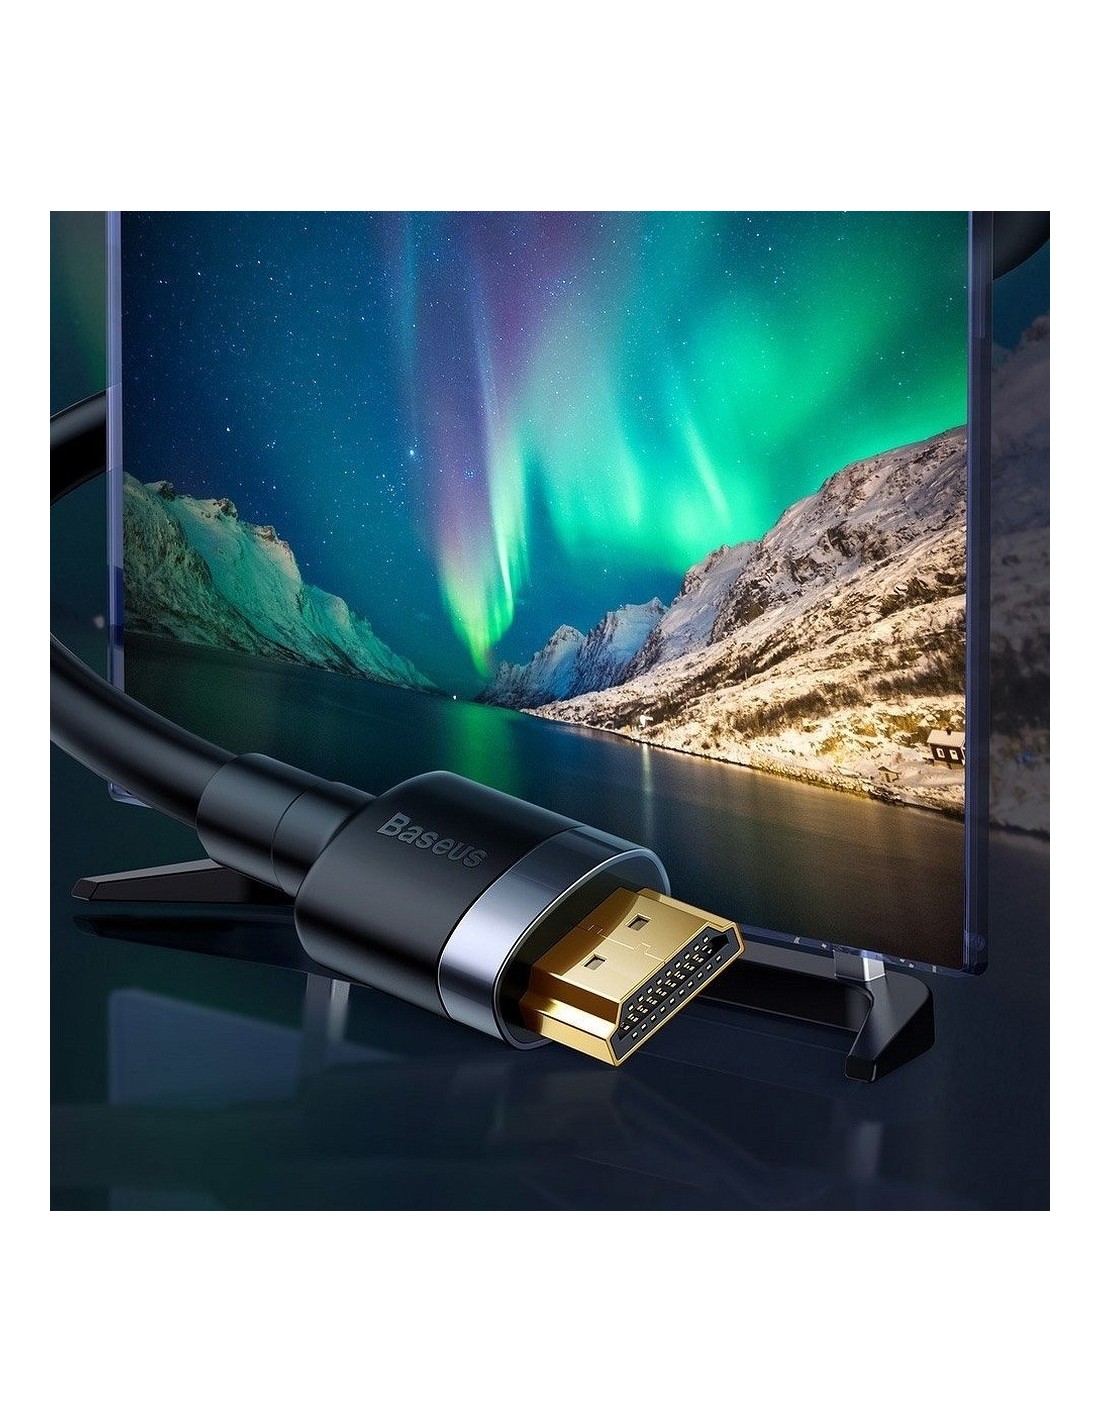 Câble HDMI 4K en Nylon Tressé avec Longueur 2m par Baseus - Noir - Français